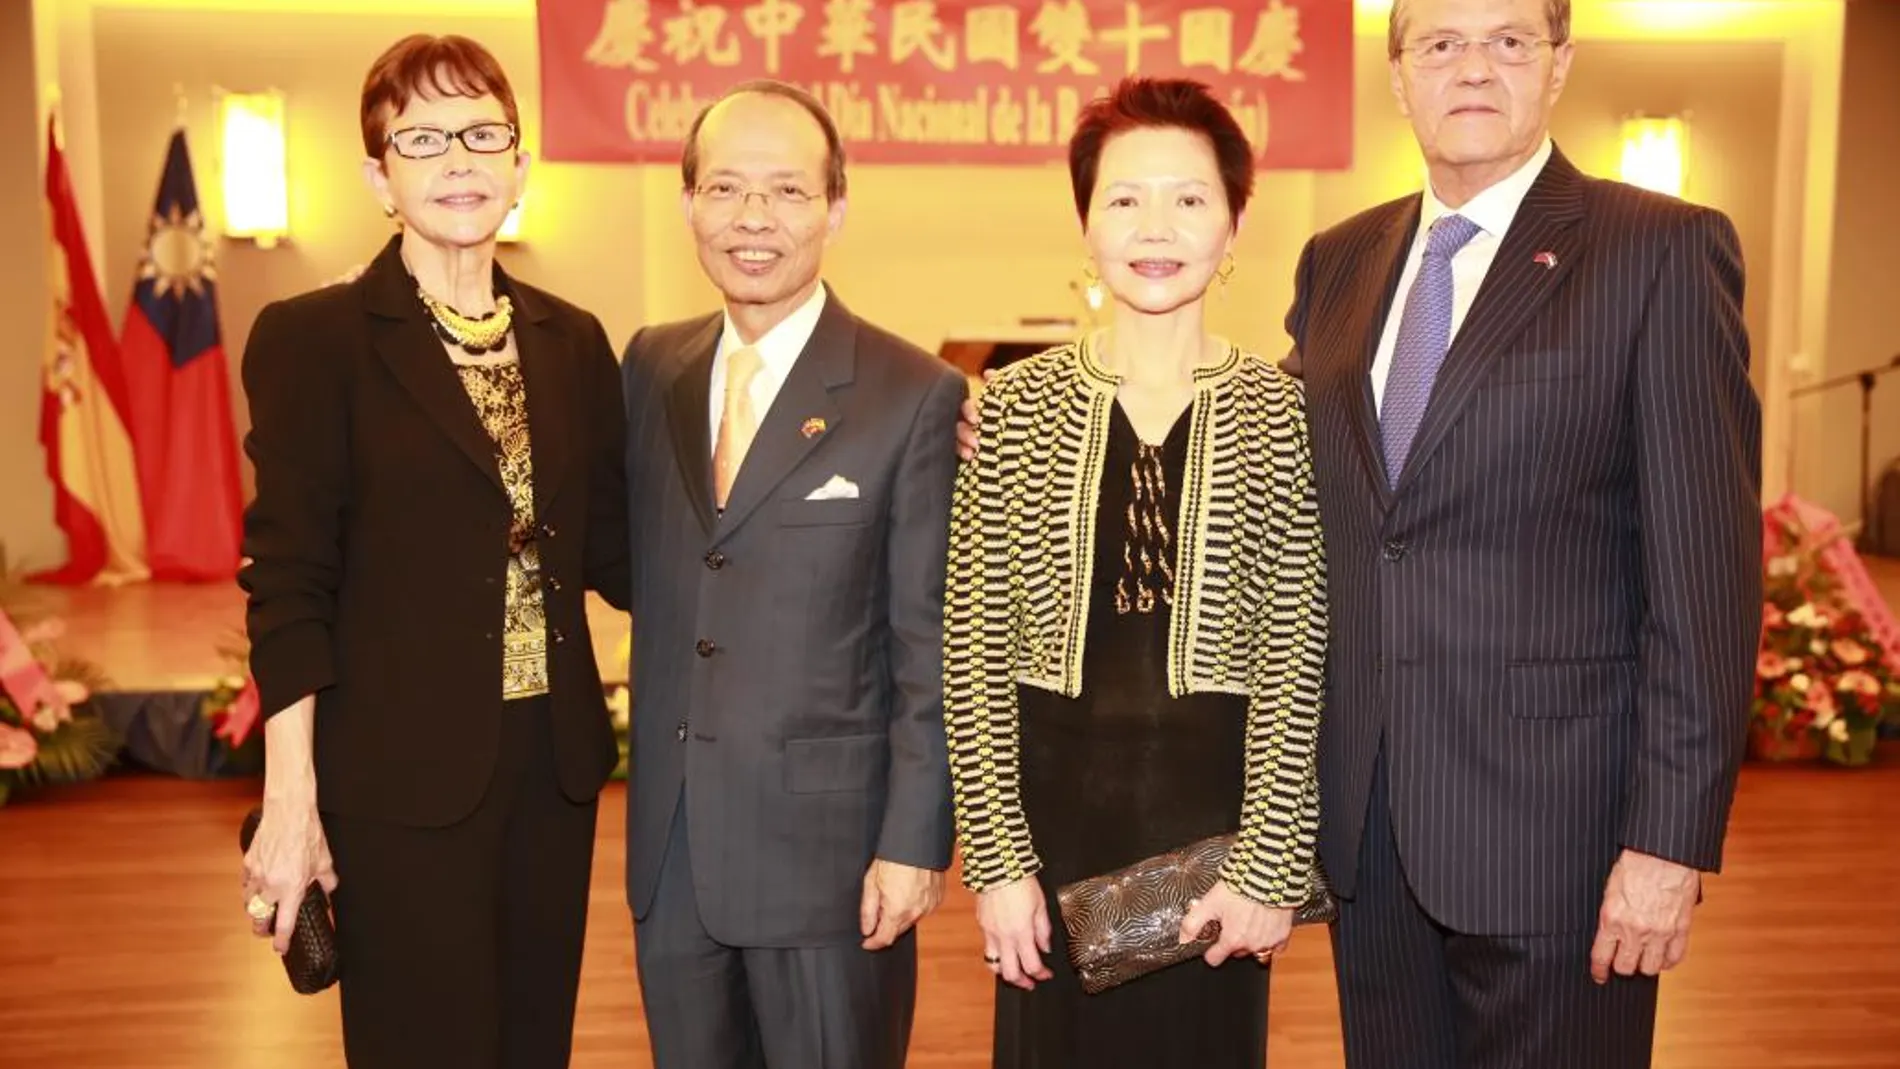 En el centro de la imagen, el embajador chino Javier Ching-shan Hou y su señora Teresa Lee; escoltados, a la izquierda, por doña Nancy Mejía y, a la derecha, don Norman García Paz, embajador de Honduras.